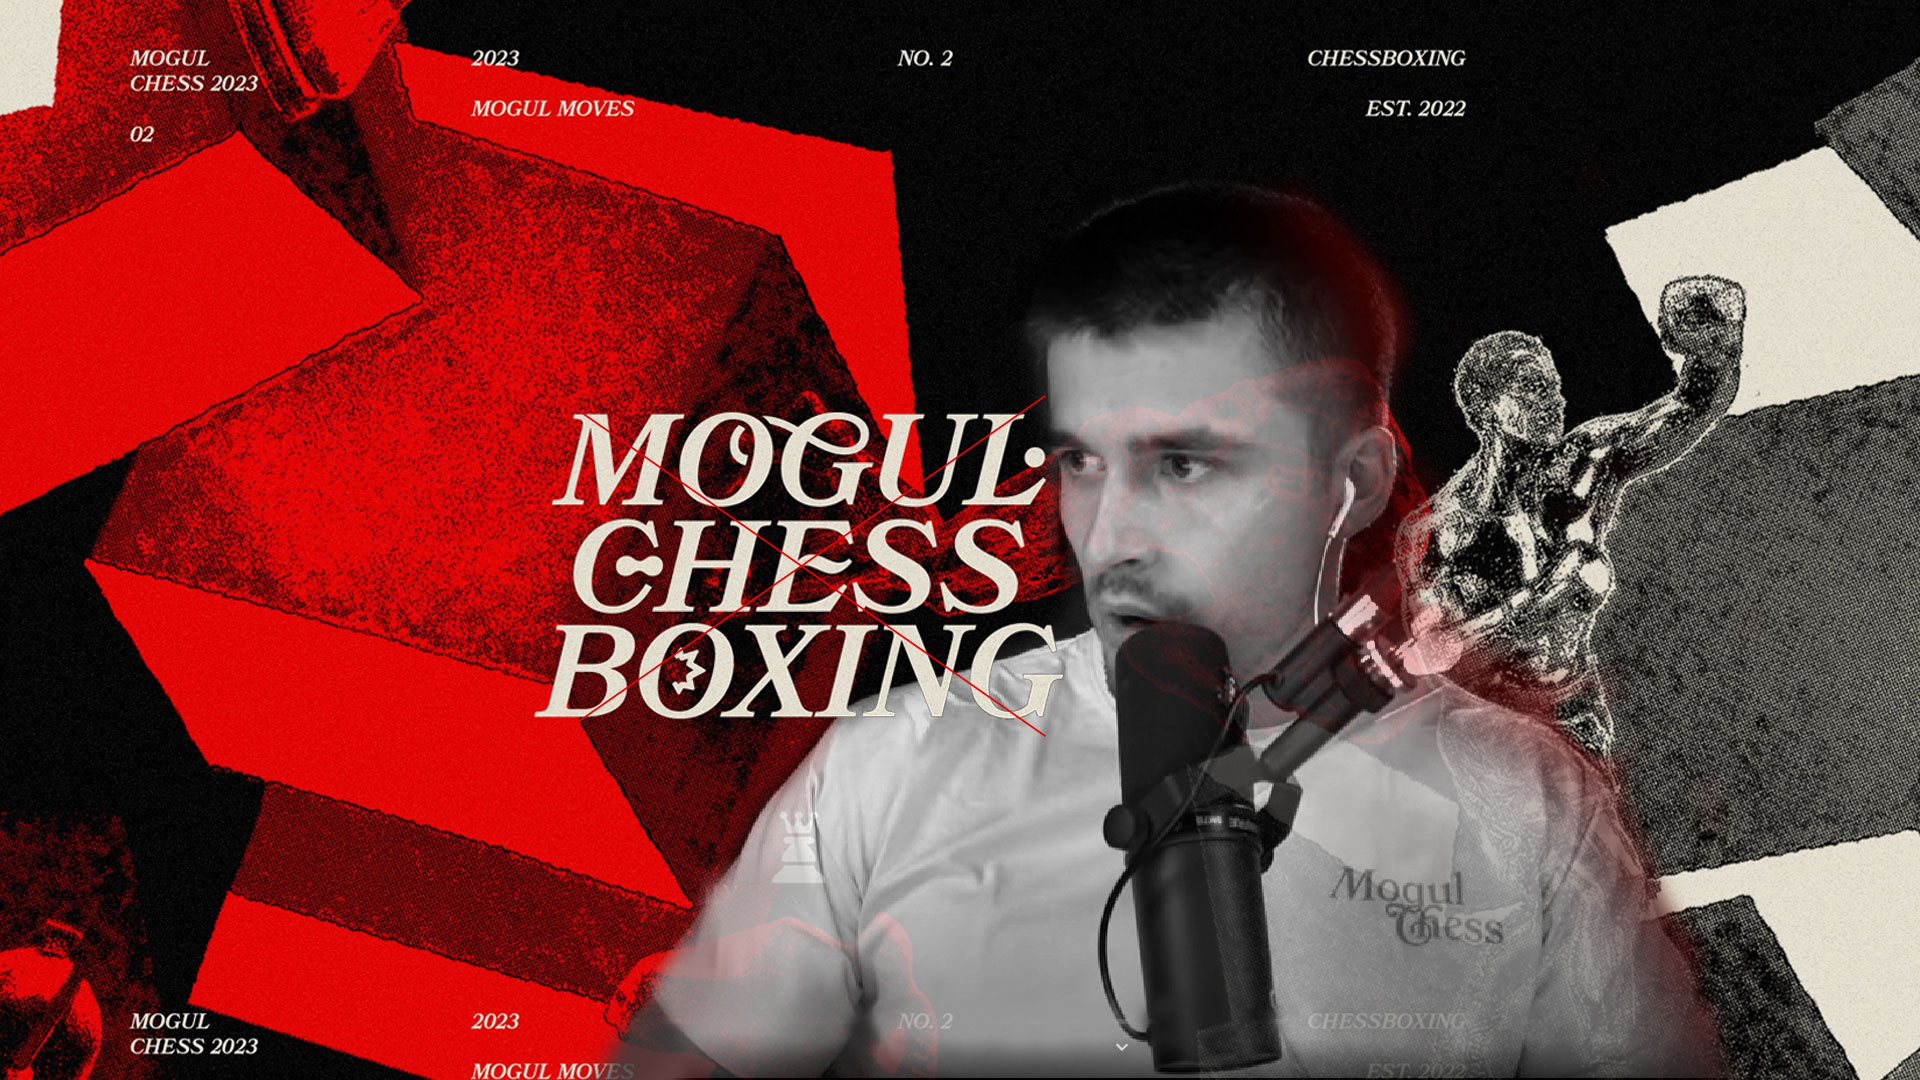 Why Ludwig has canceled Mogul Chessboxing 2023